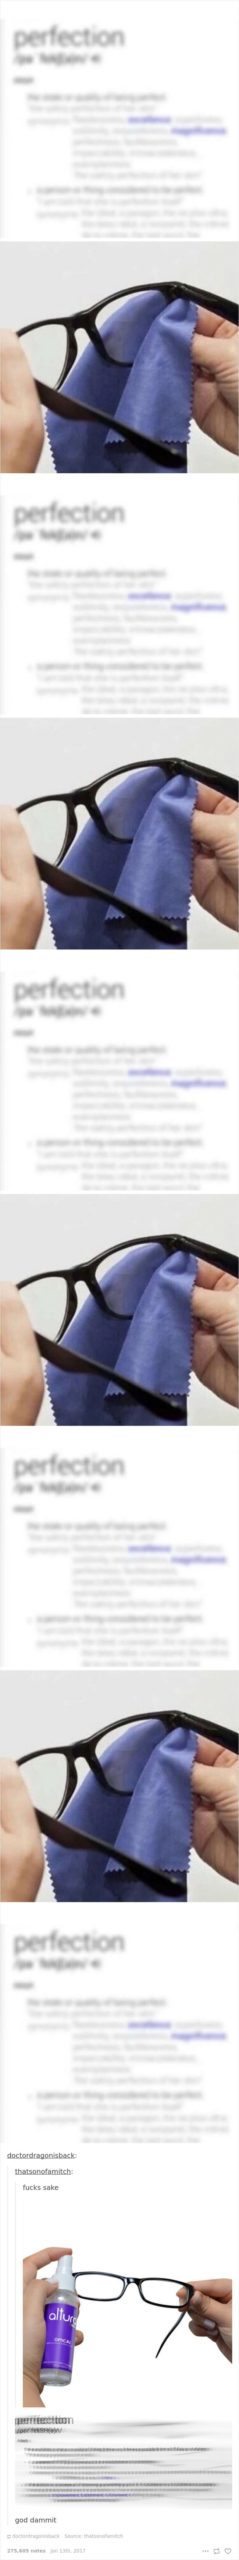 glasses meme - cleaning glasses makes it blurrier